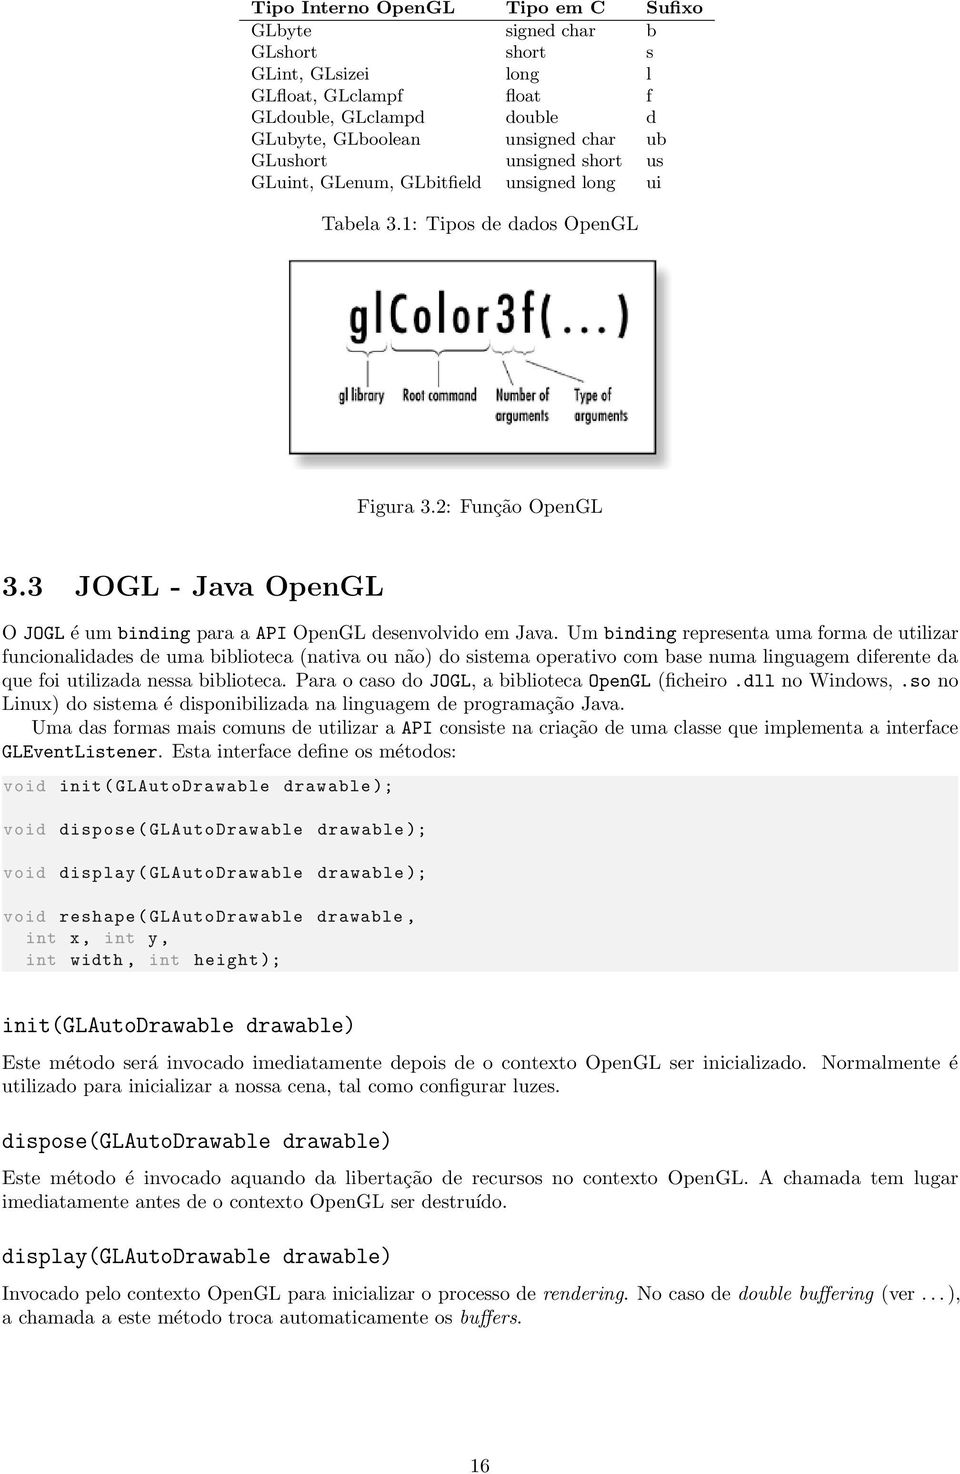 3 JOGL - Java OpenGL O JOGL é um binding para a API OpenGL desenvolvido em Java.